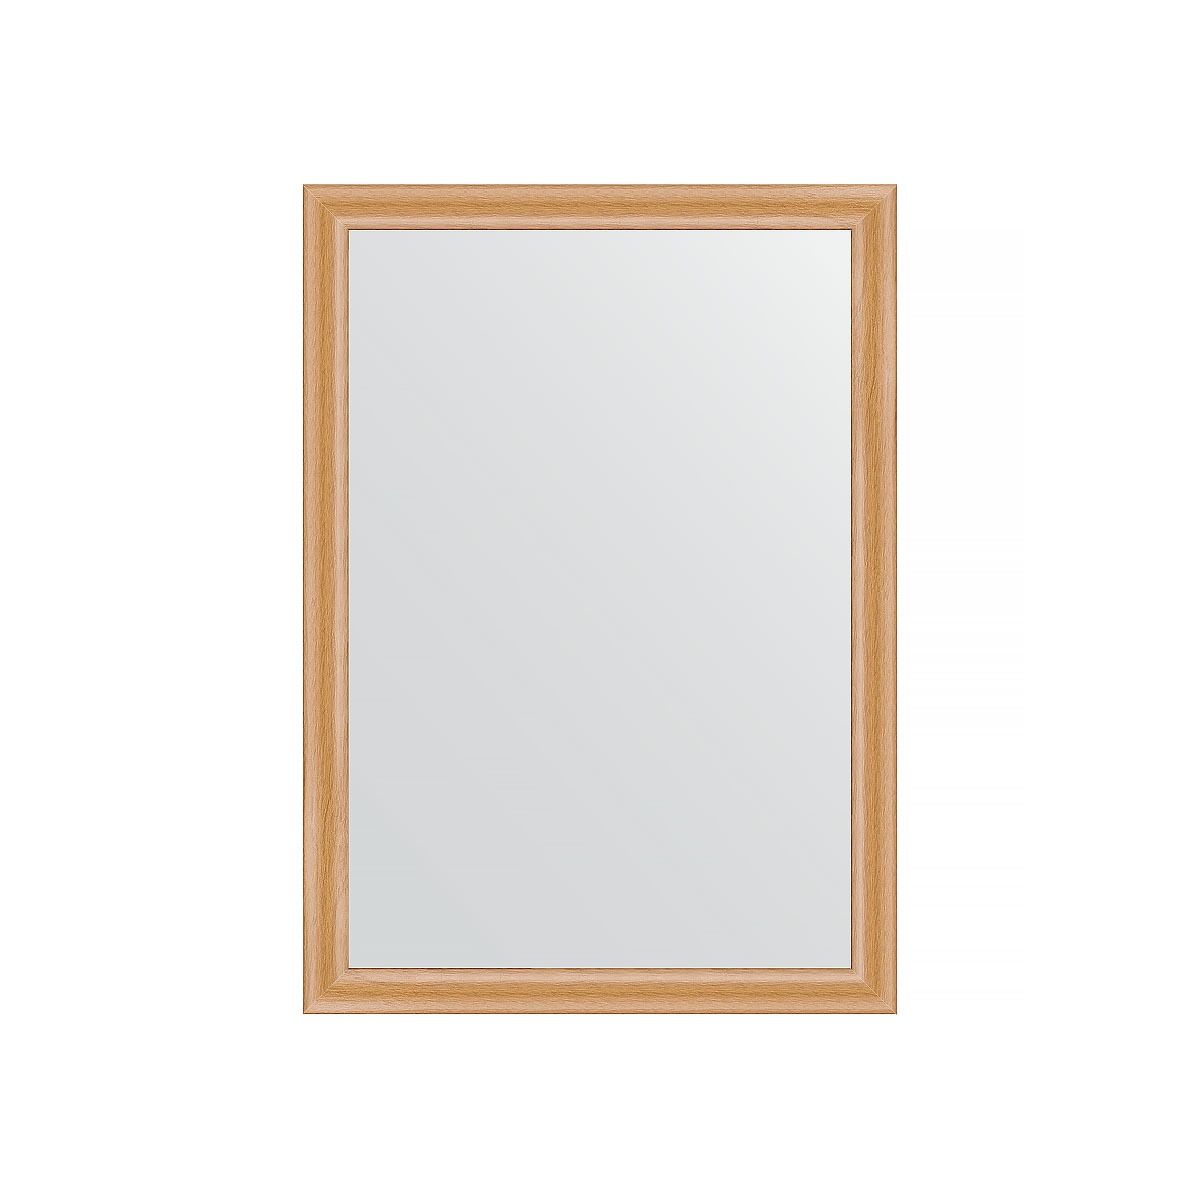 Зеркало в багетной раме Evoform клен 37 мм 50х70 см зеркало evoform со шлифованной кромкой 50х70 см